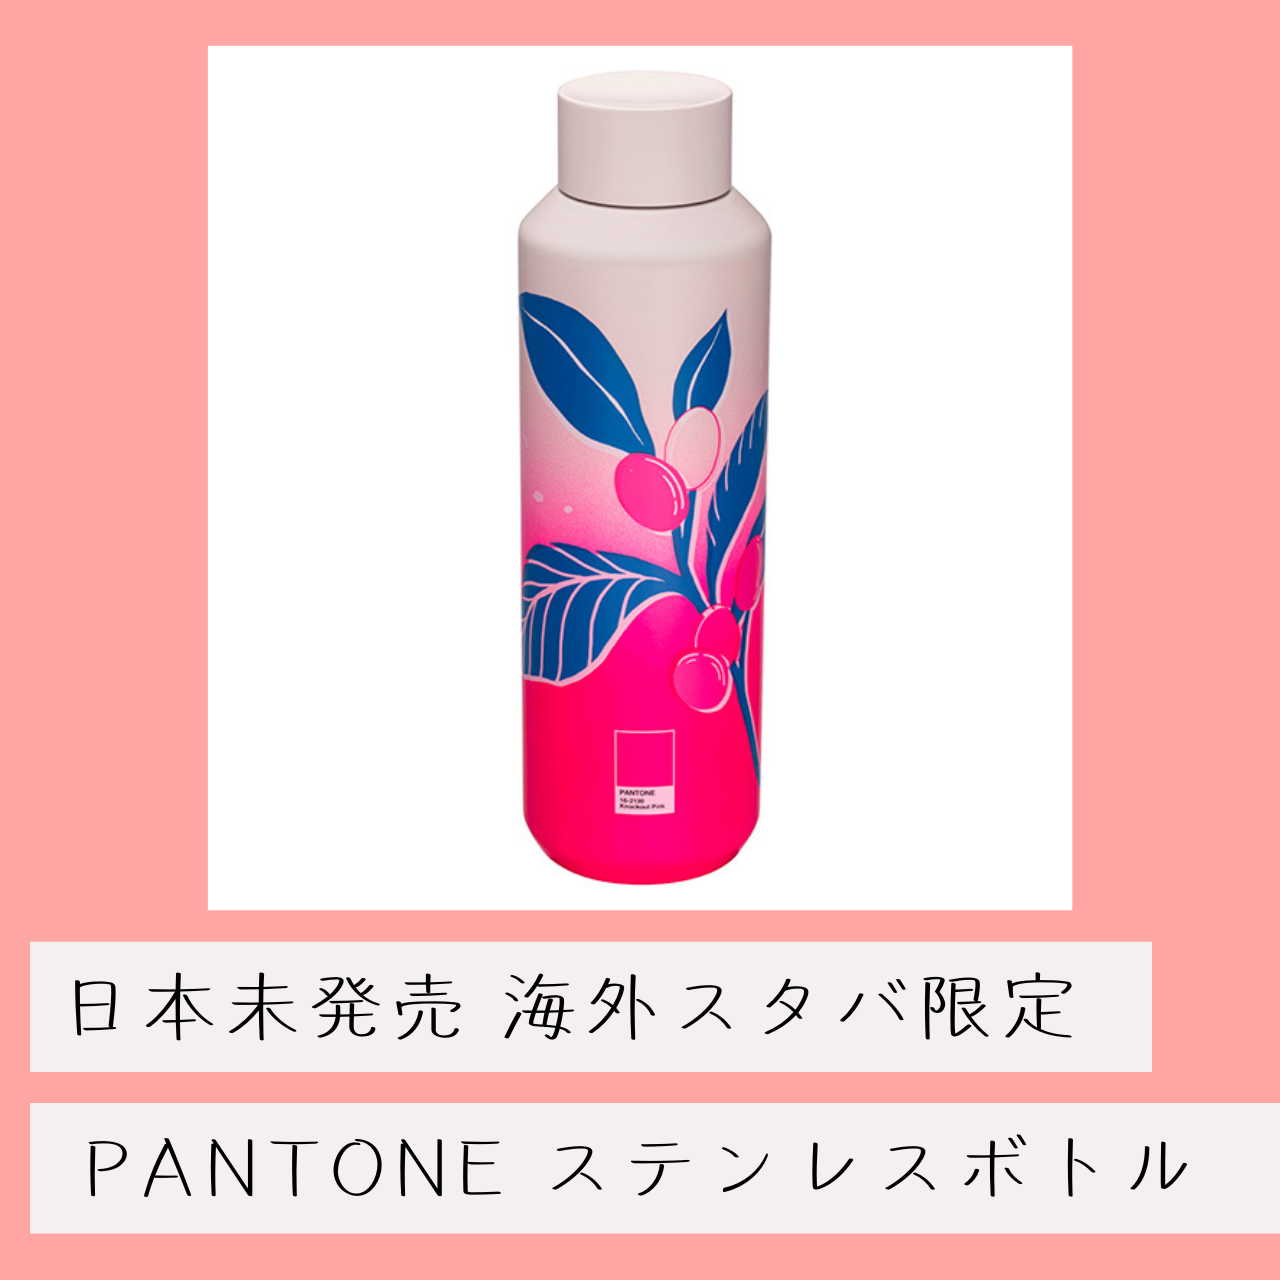 台湾 スタバ PANTONE パントン コラボ 日本未発売 海外限定 ステンレス 